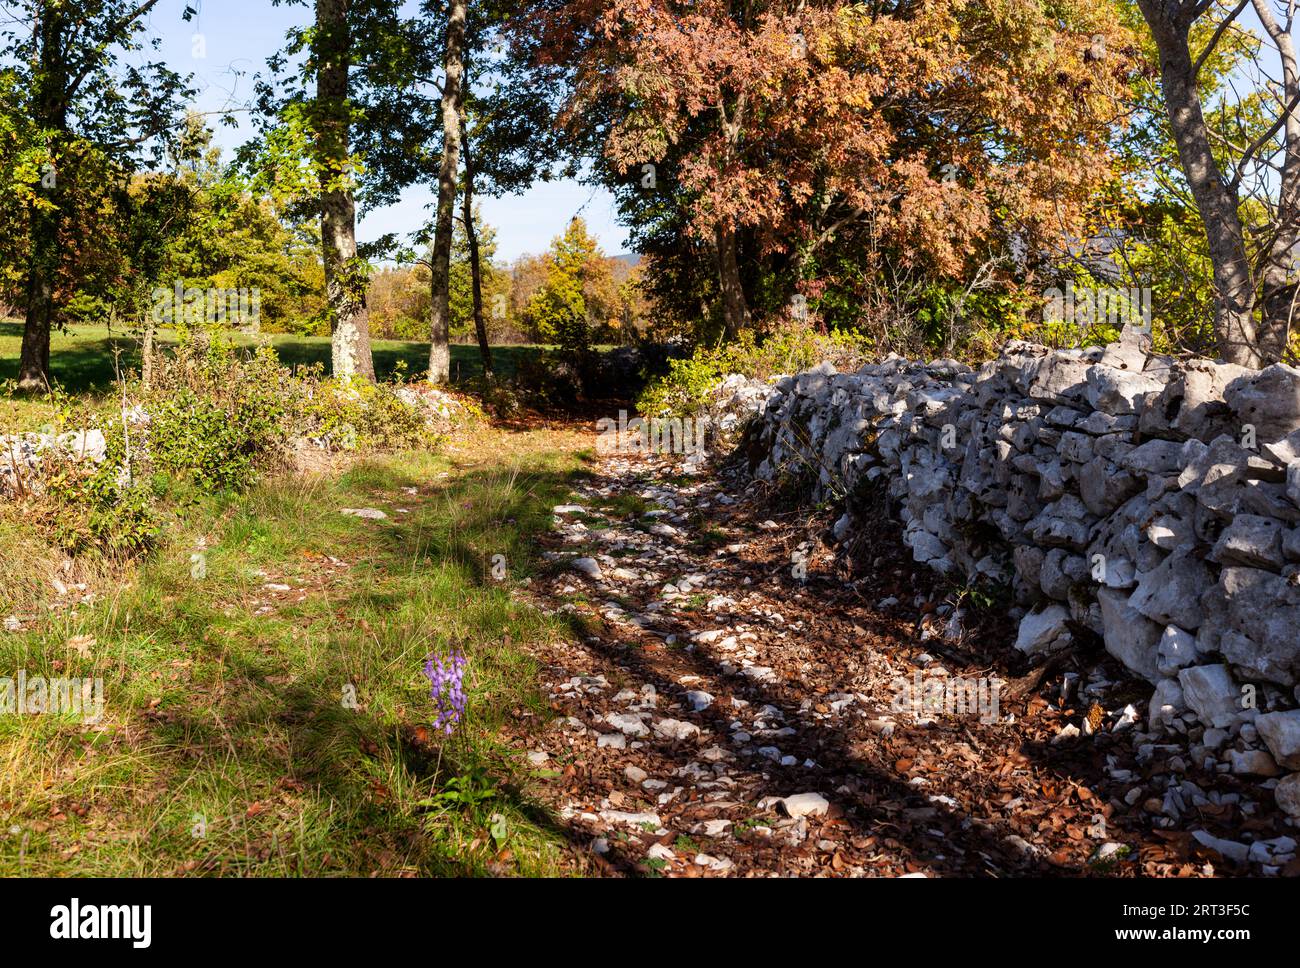 Vecchio muro a secco sloveno in un giardino selvaggio. Detto muro a secco perché le pietre non sono fissate con Malta, ma semplicemente sovrapposte e interbloccate Foto Stock